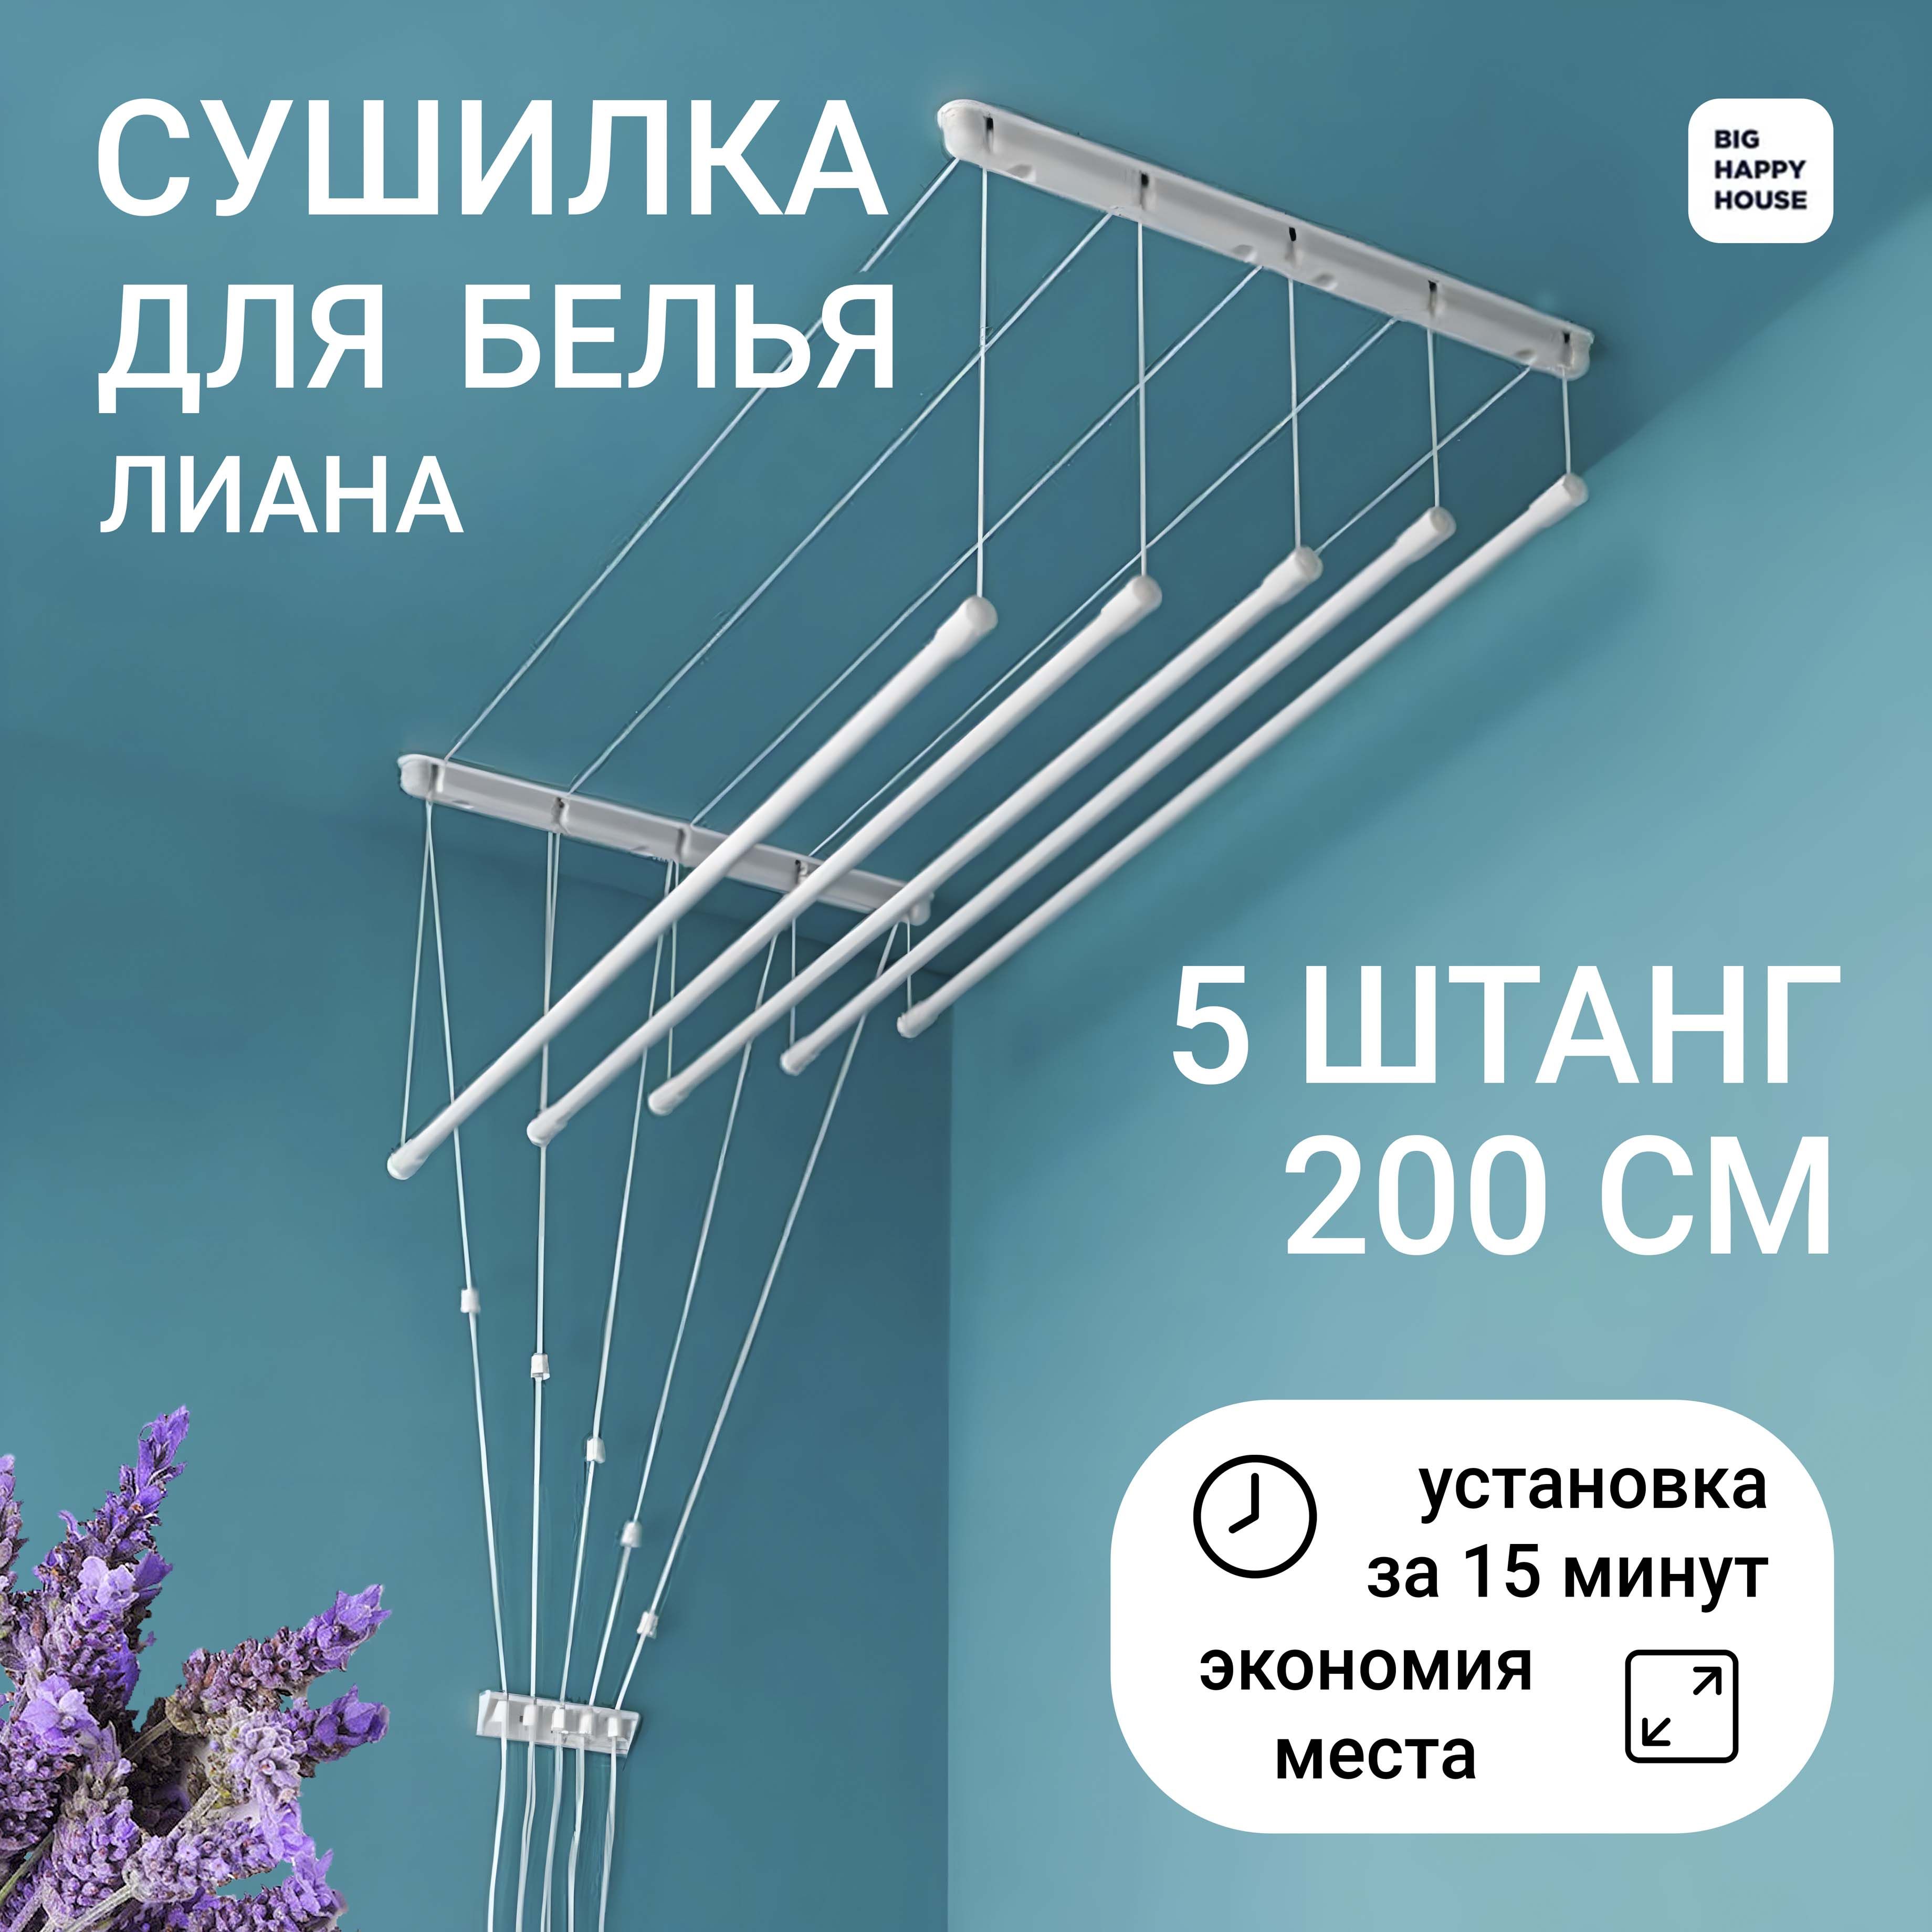 Сушилка для белья Лиана 2,0 м потолочная купить в Воронеже - 1 руб. руб.